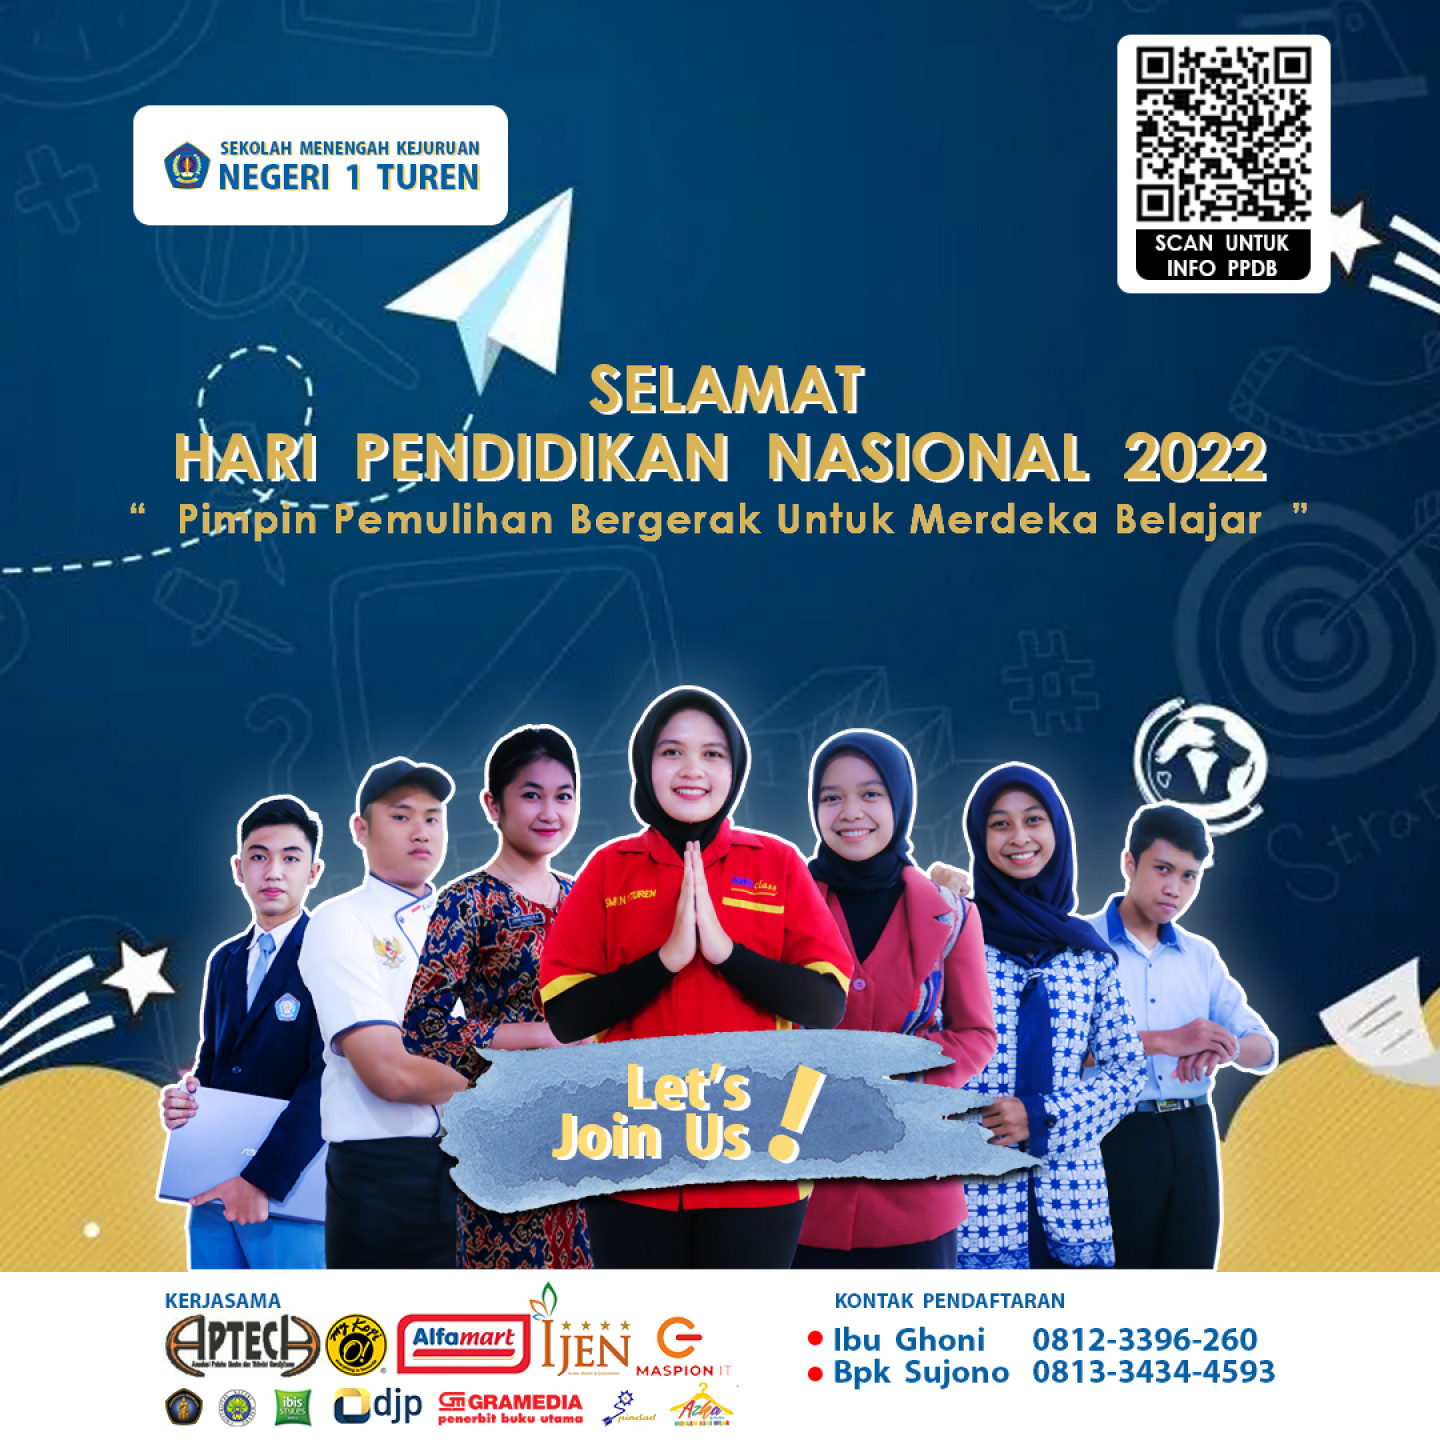 Hari Pendidikan Nasional 2022